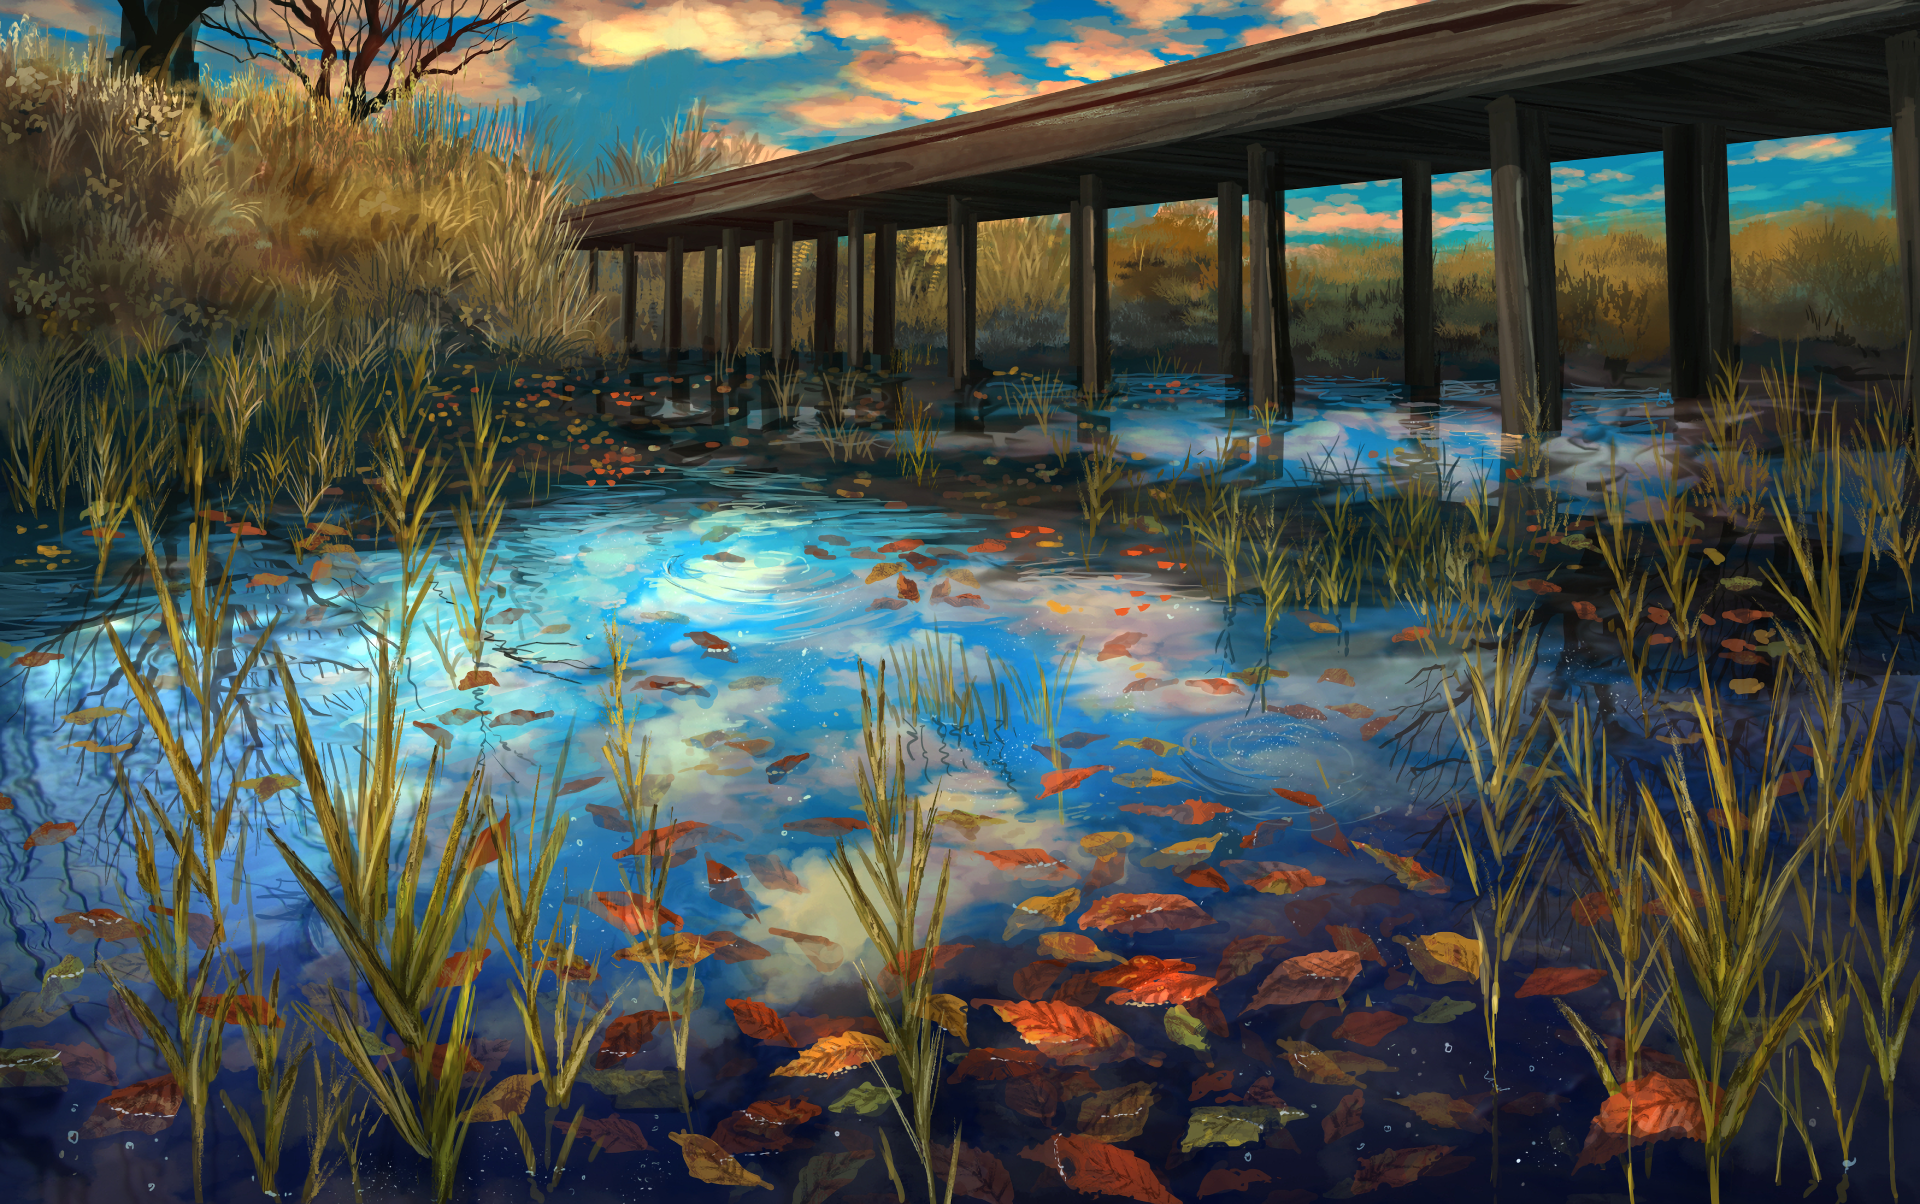 Download 1600x900 Anime Landscape, River, Bridge, Autumn, Scenic Wallpaper